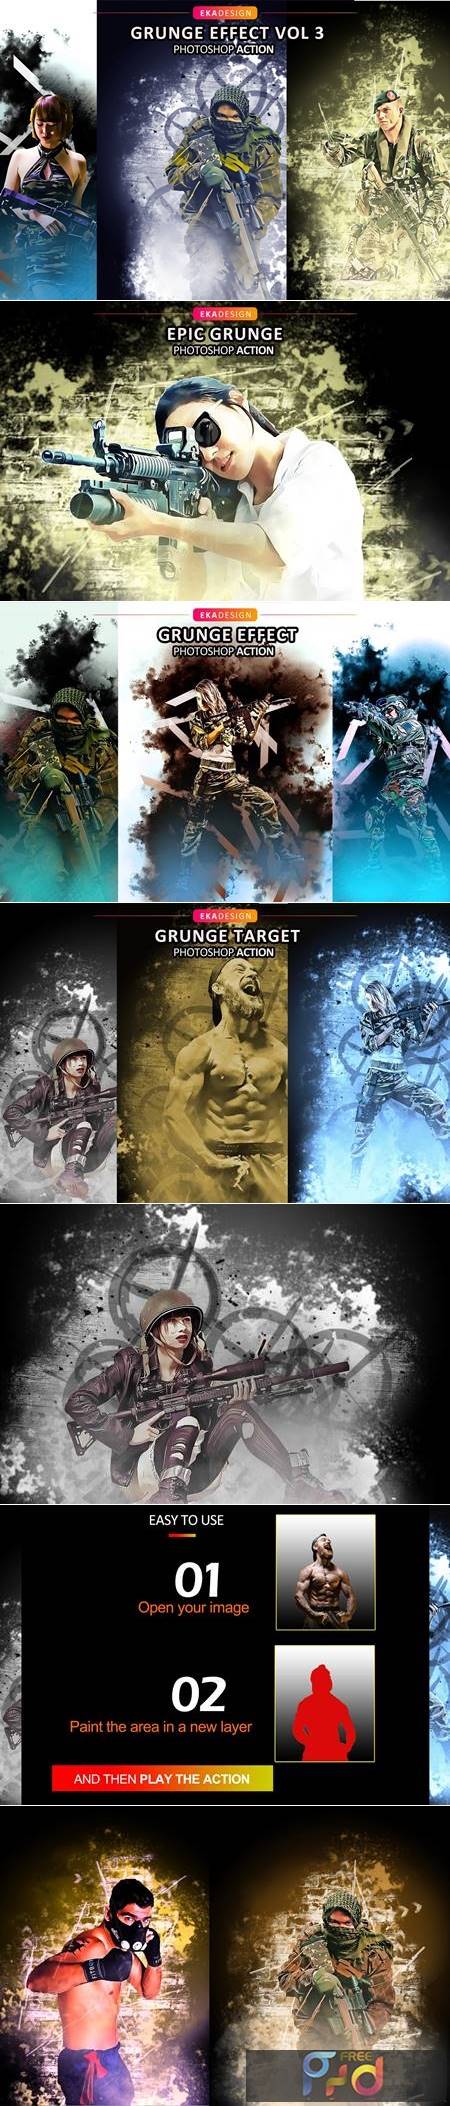 Grunge Effect Vol 3 6291030 1